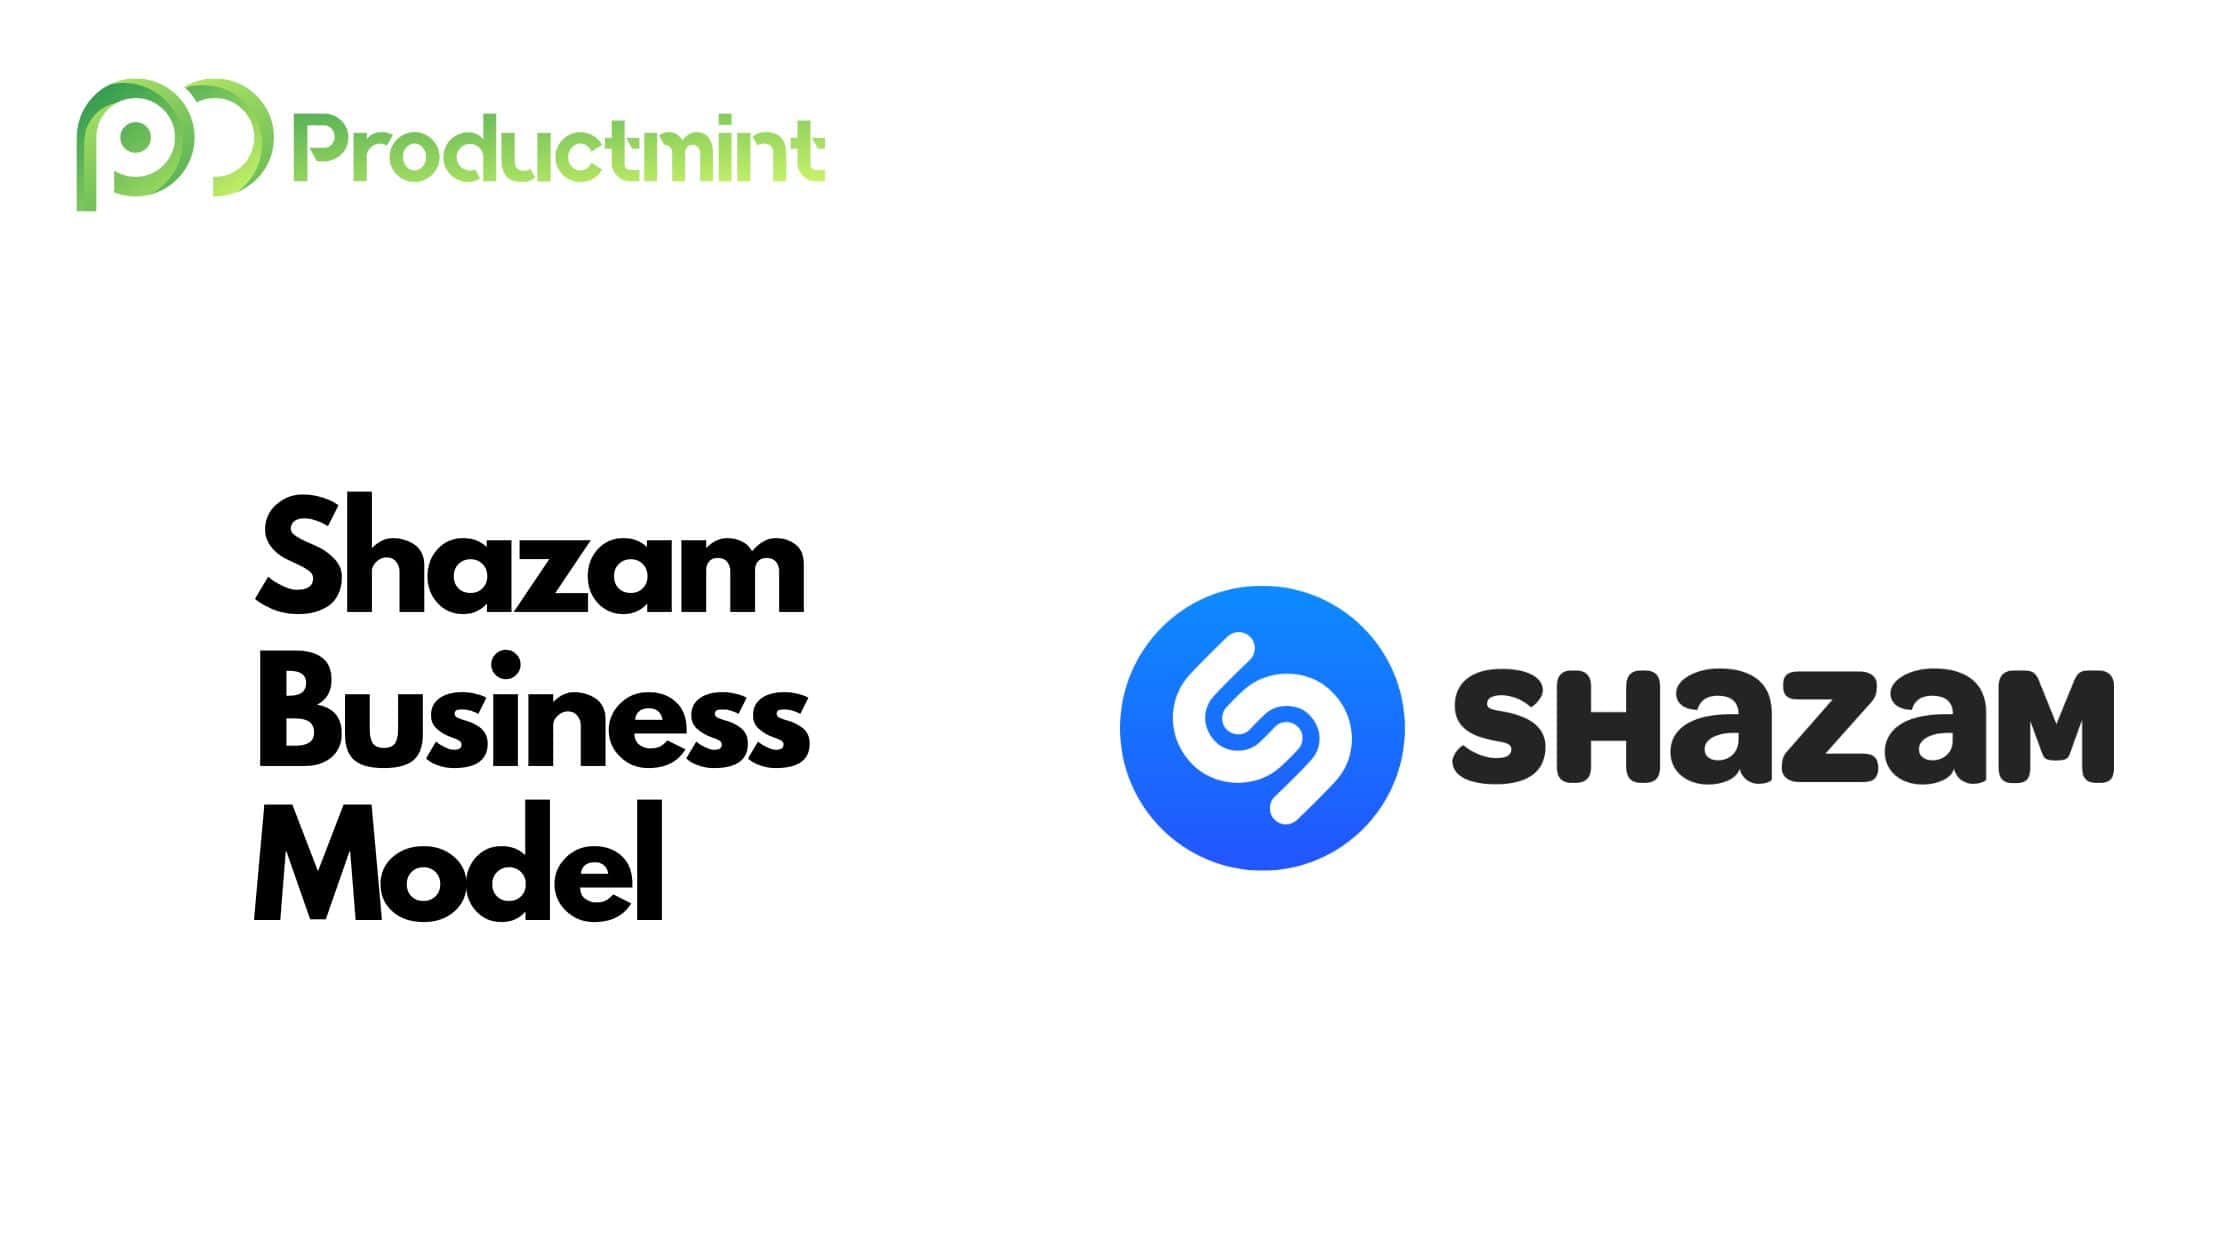 Shazam Business Model